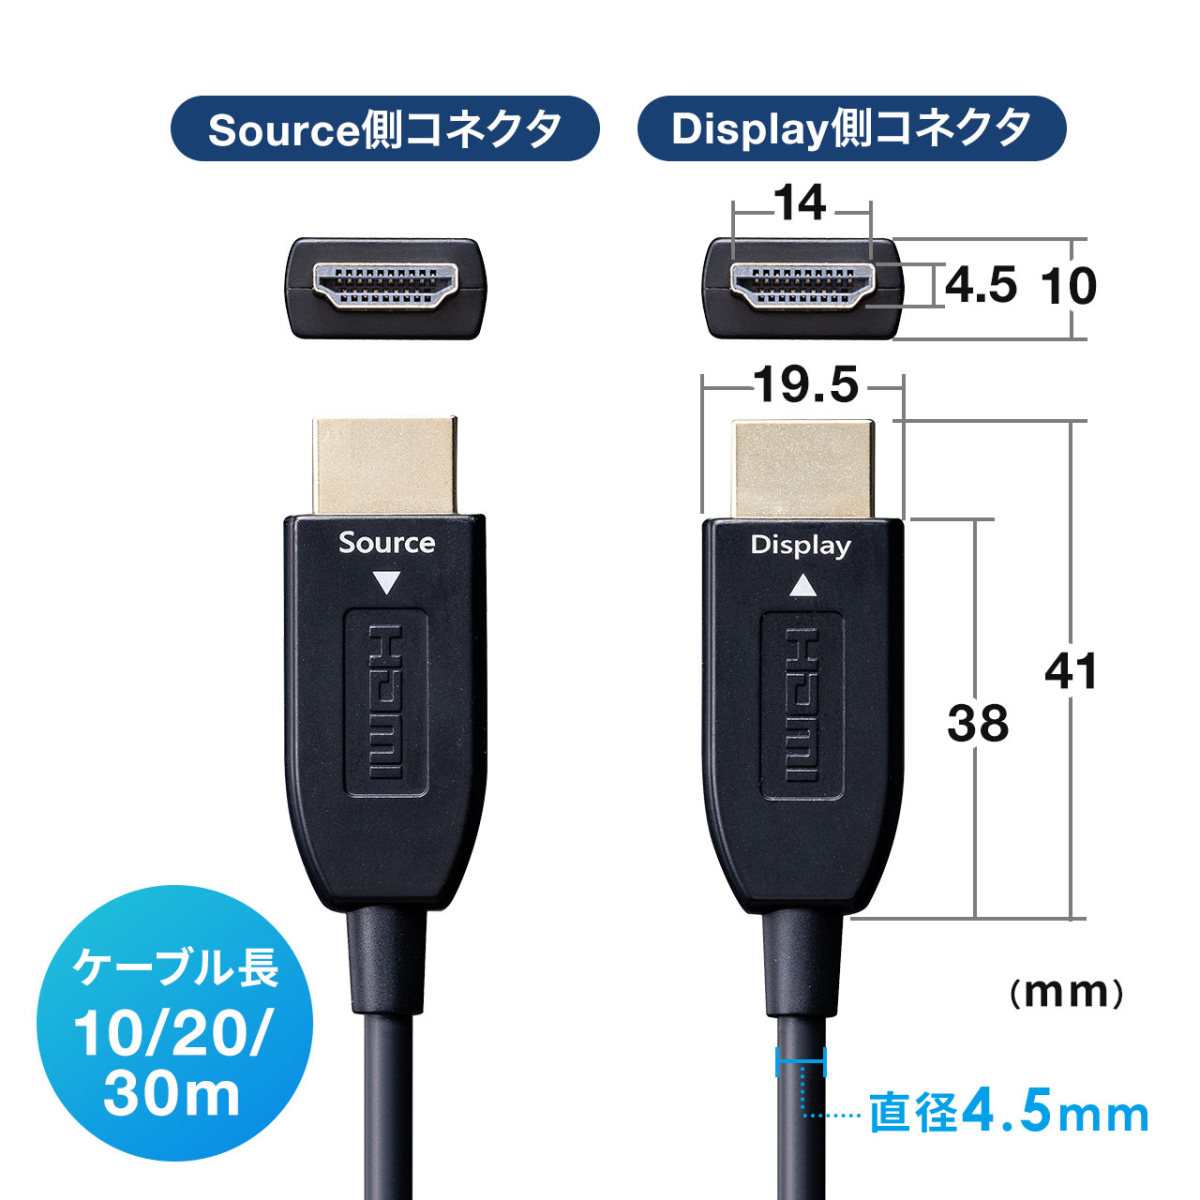 HDMIケーブル 10m 光ファイバー 高画質 8K/60Hz 4K/120Hz HDMI2.1 ARC